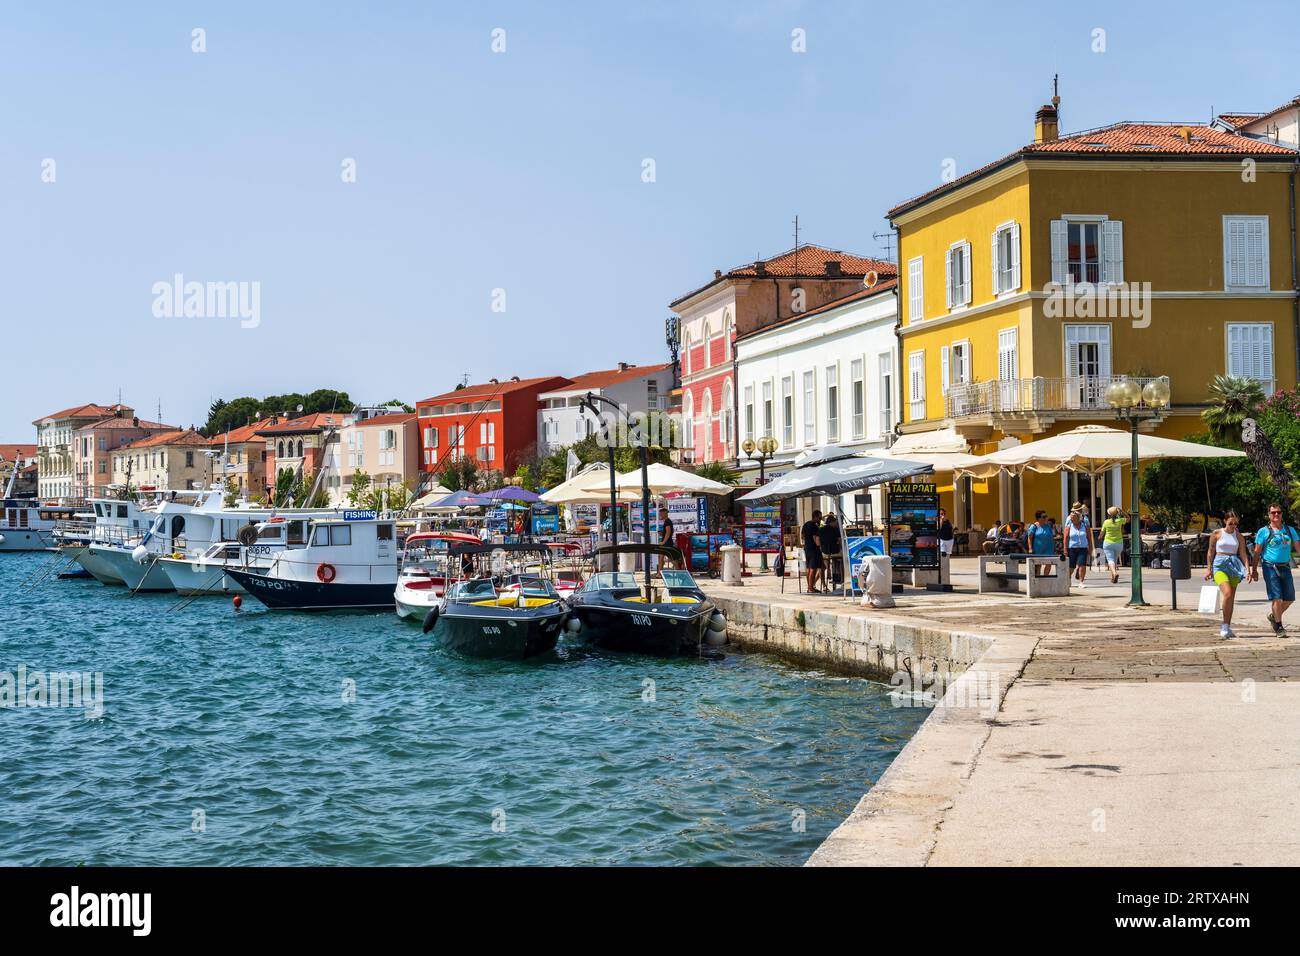 Bâtiments colorés et bateaux sur les quais de Poreč, une station balnéaire populaire, sur la péninsule d'Istrie en Croatie Banque D'Images